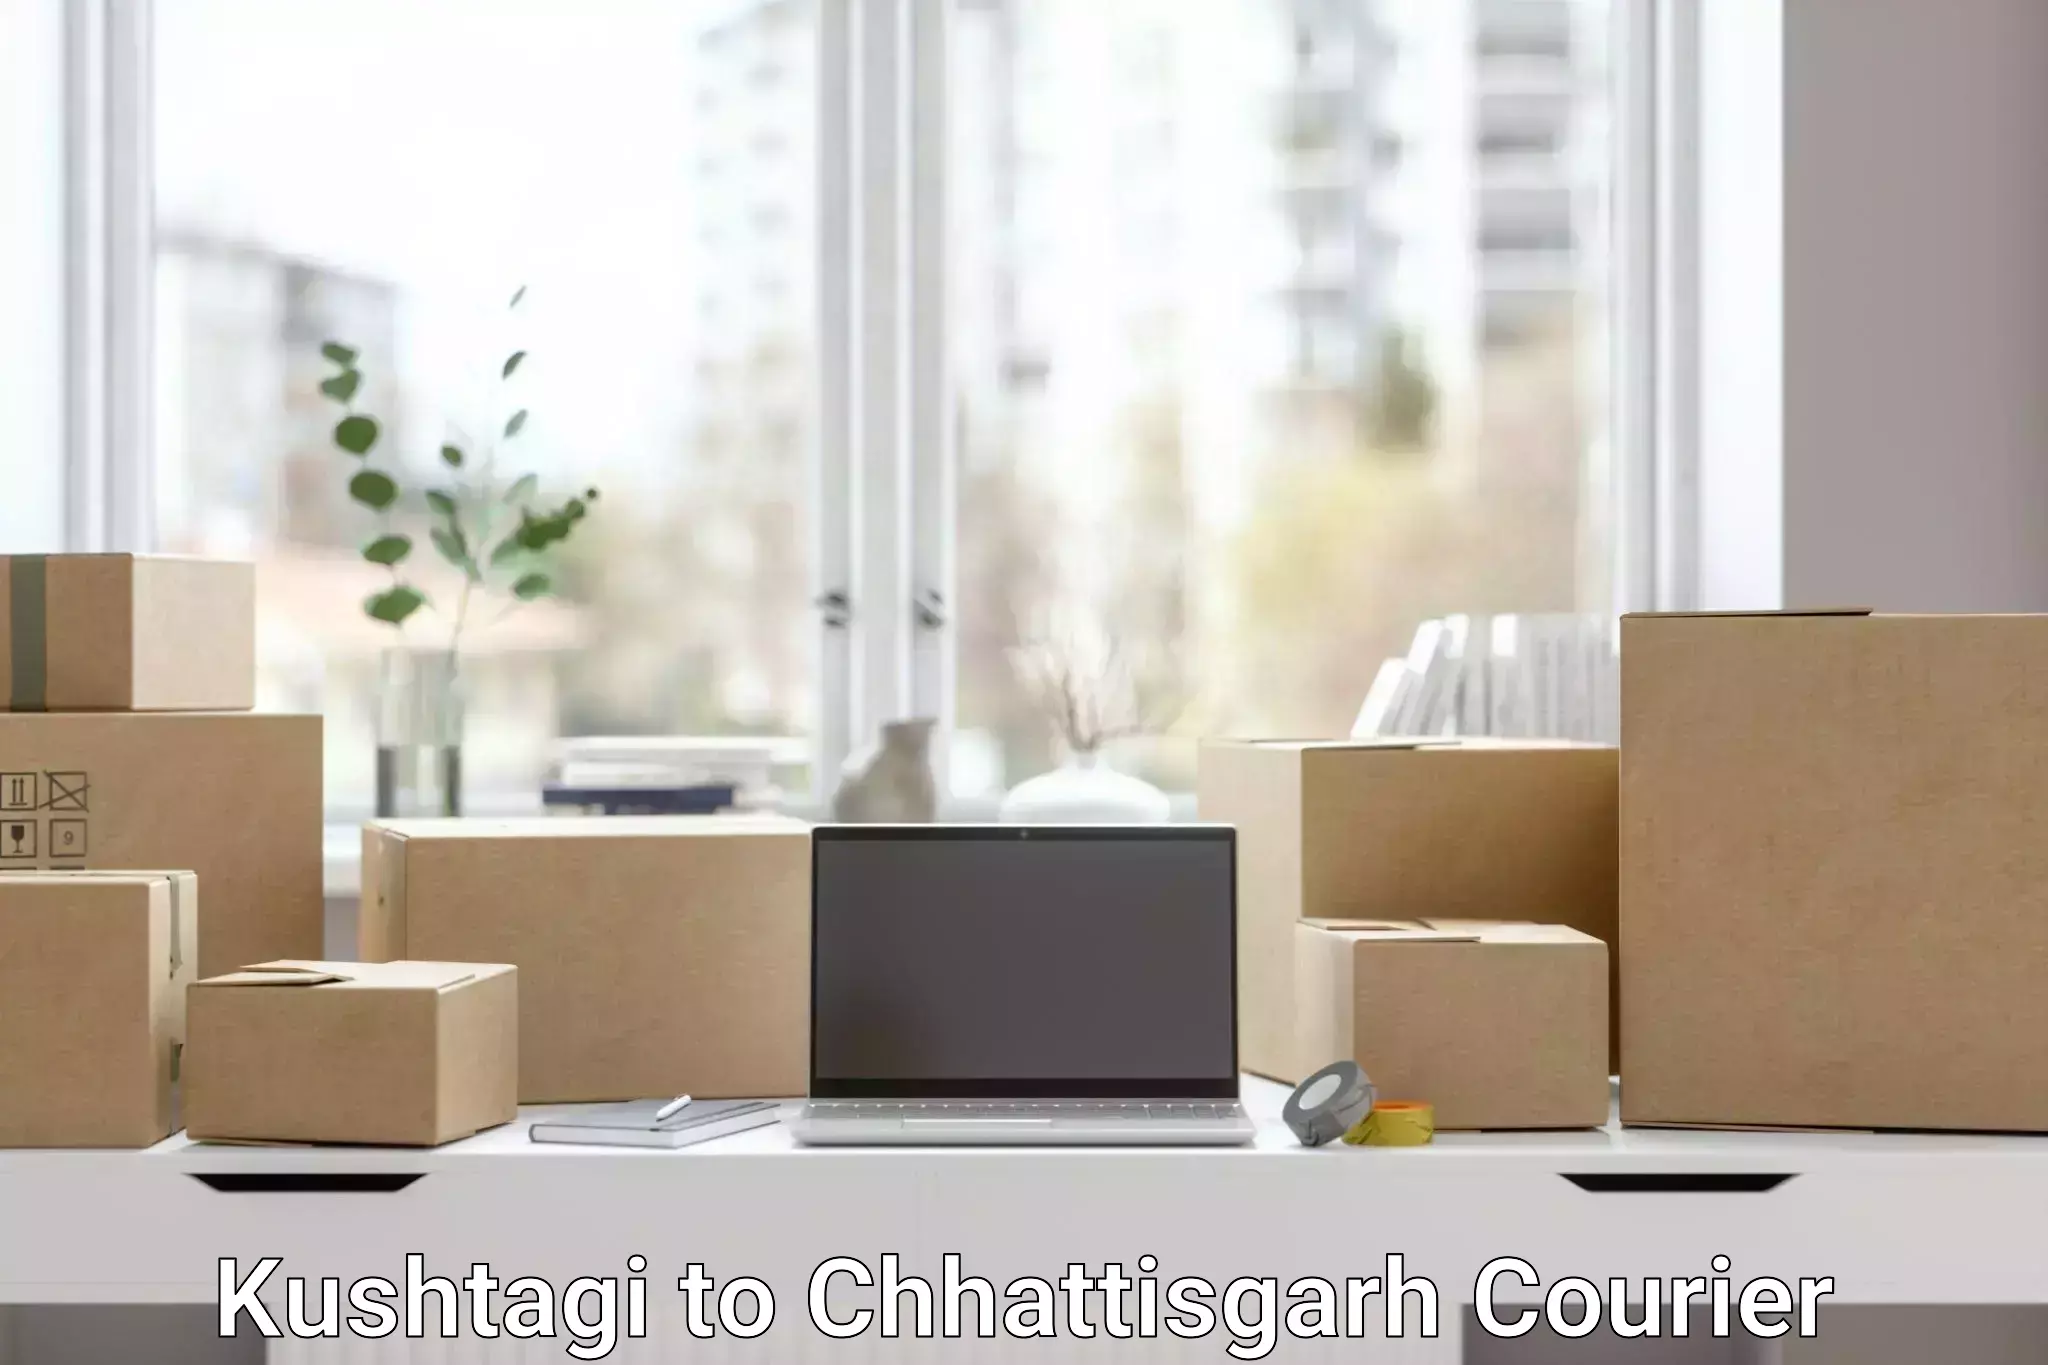 Package consolidation Kushtagi to Patna Chhattisgarh